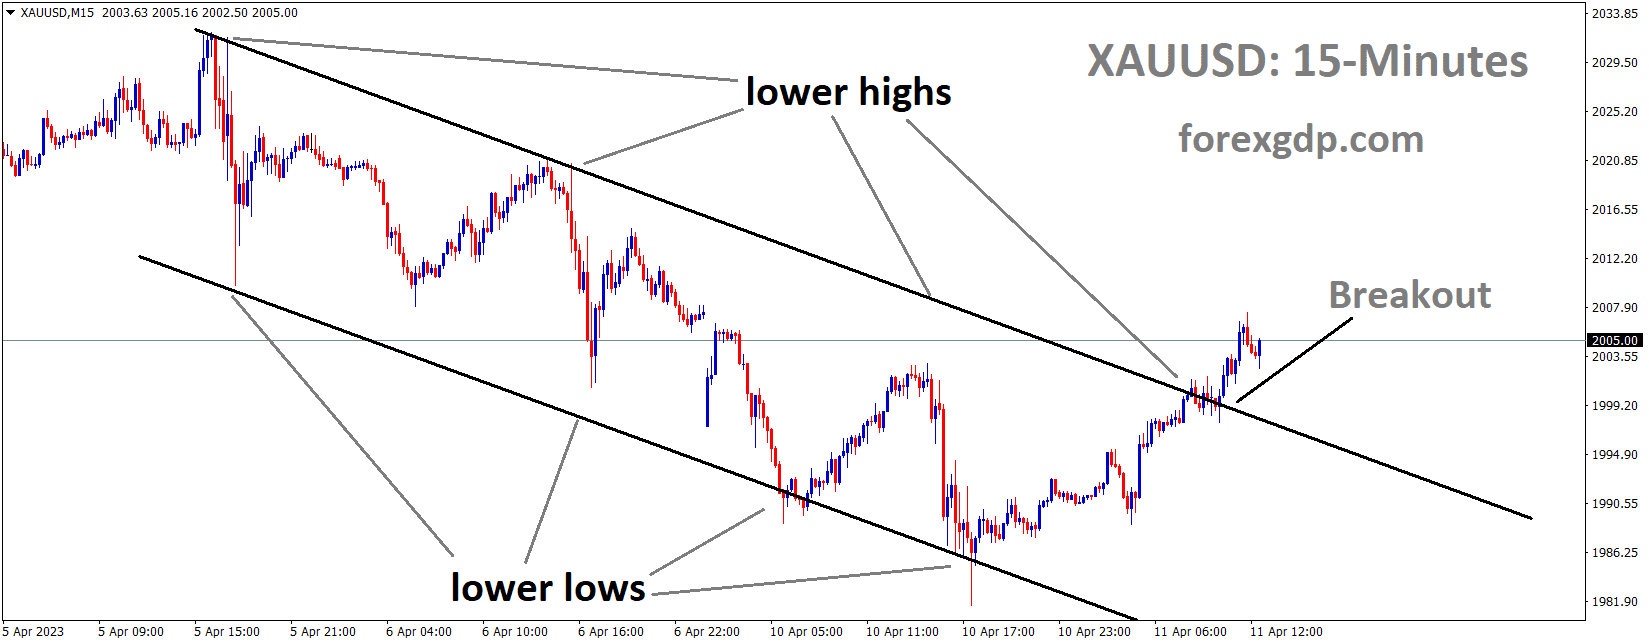 XAUUSD Gold price has broken the Descending channel in upside.